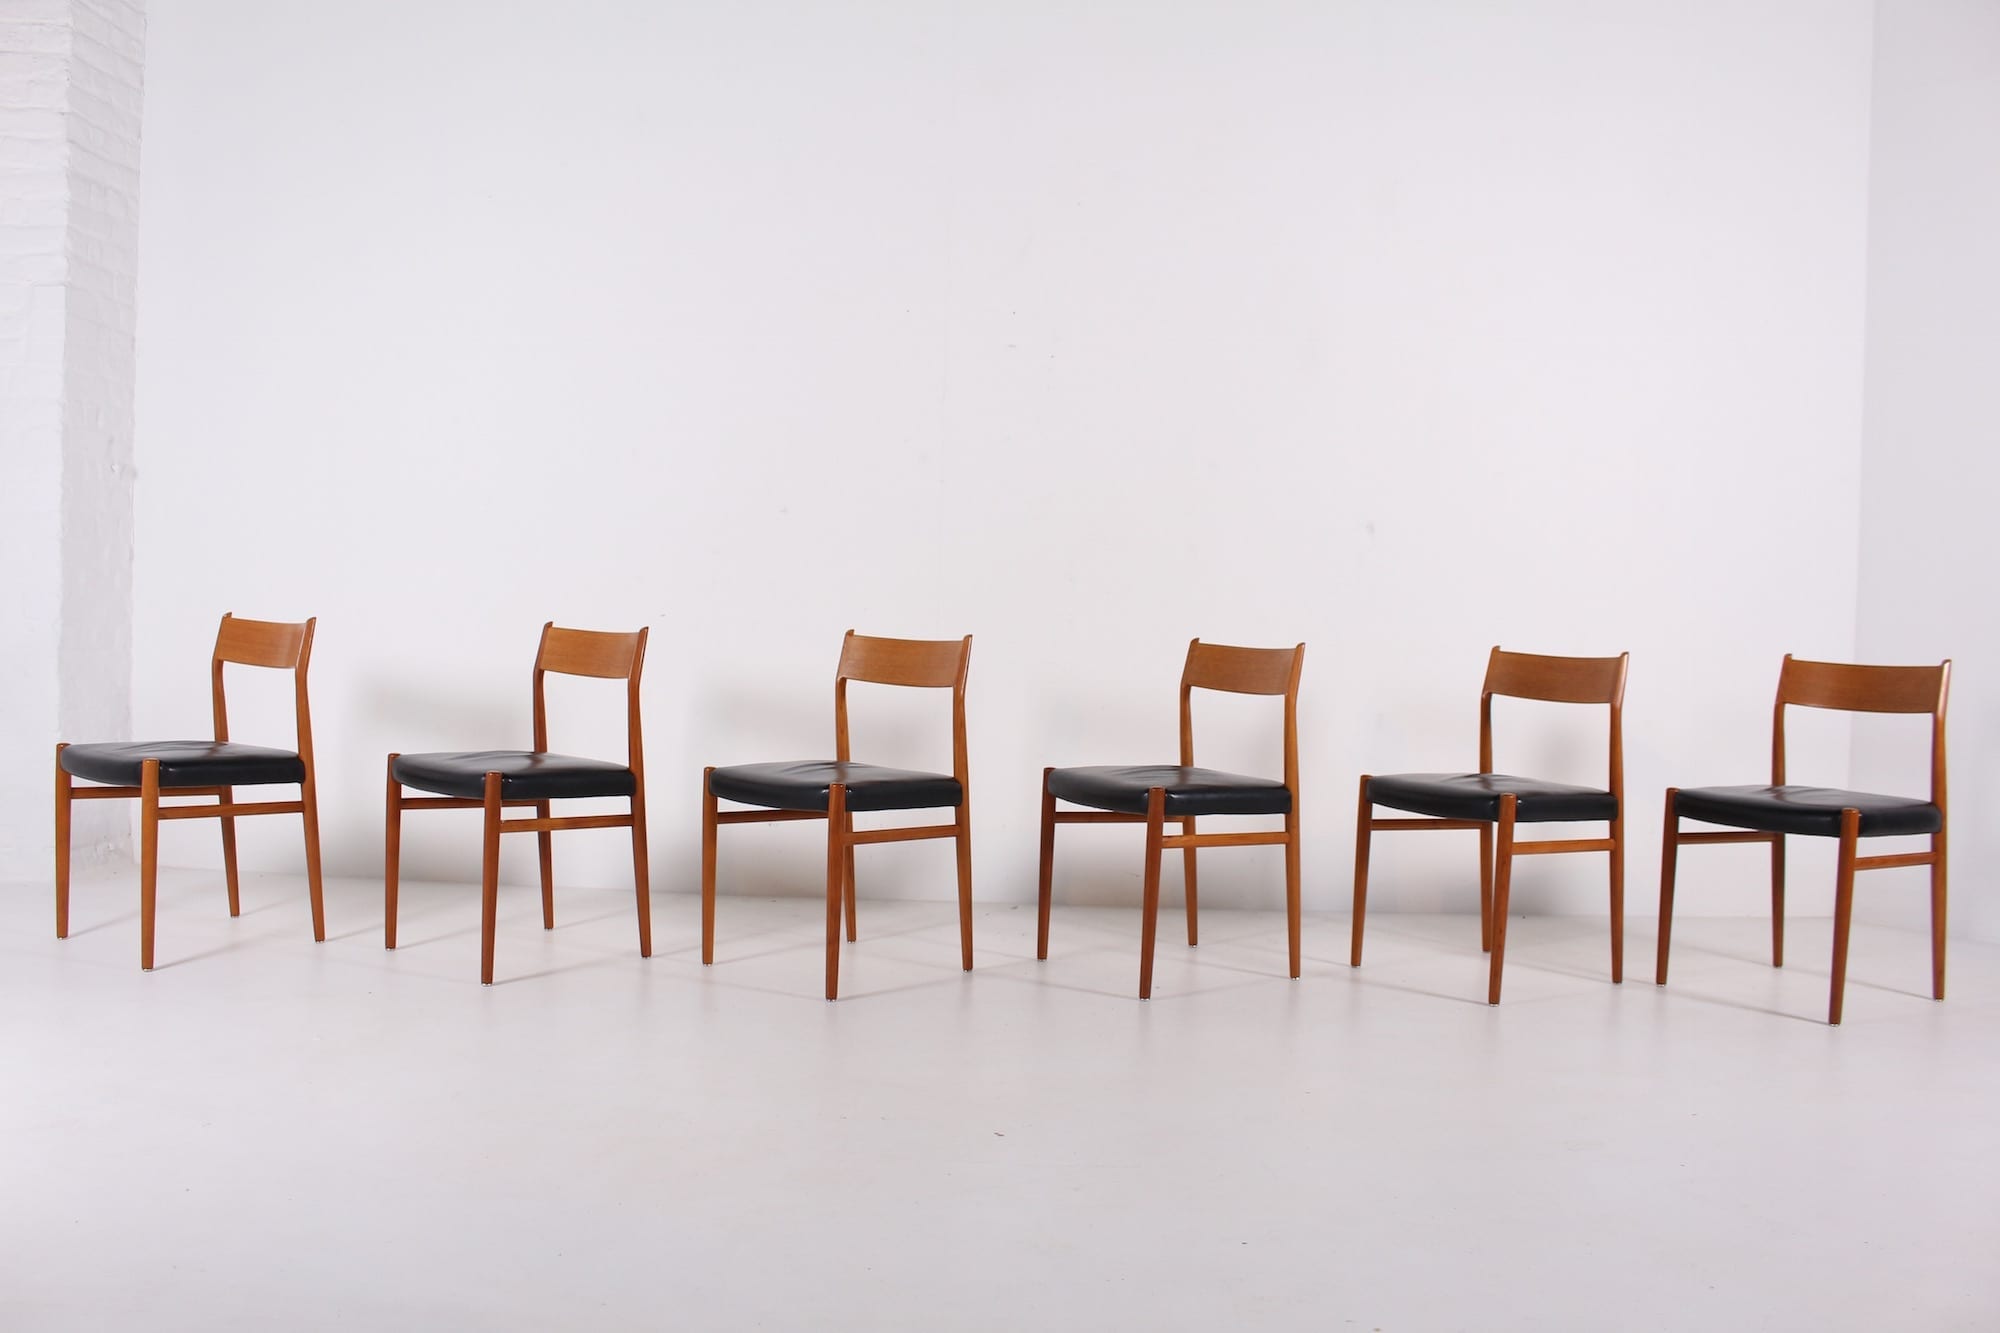 kousen AIDS Pijnboom Scandinavisch design vintage stoelen - Meubles Vintage